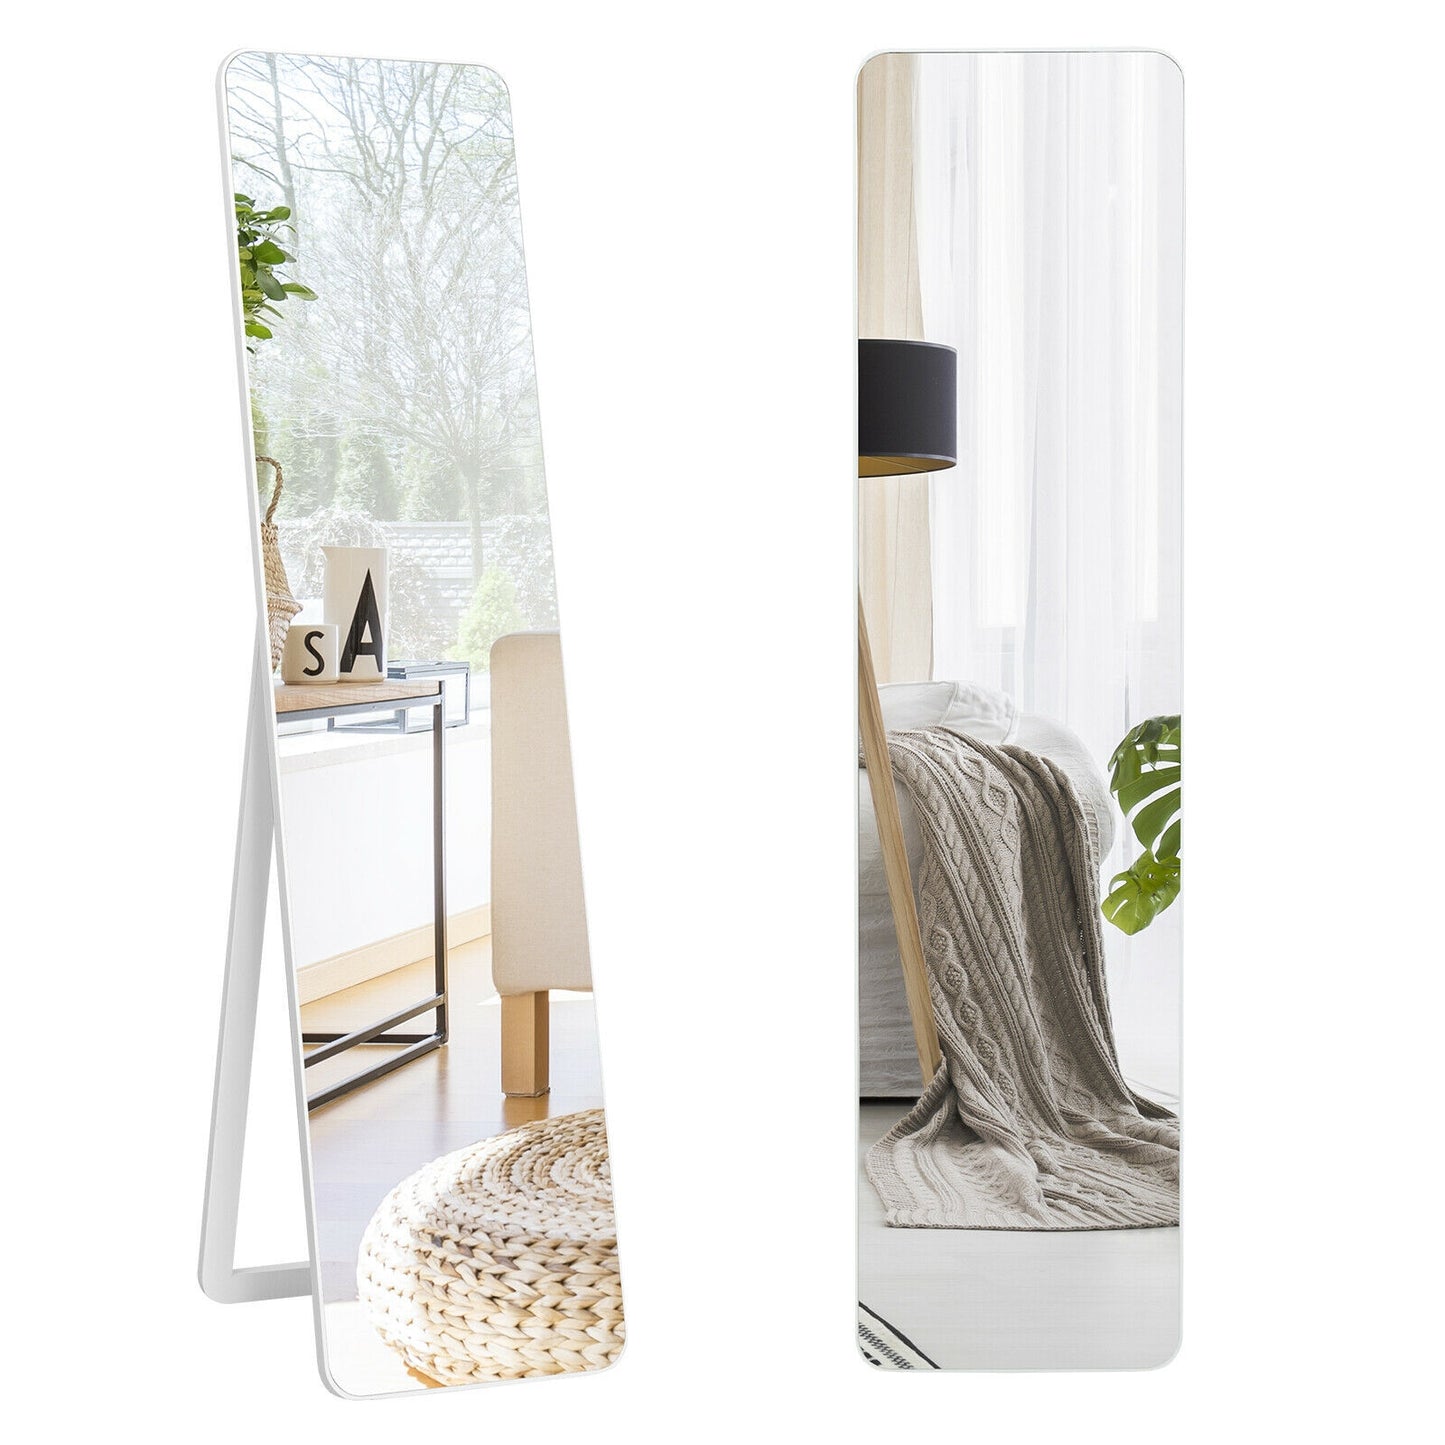 Full Length Frameless Wall Mountable Floor Mirror-White